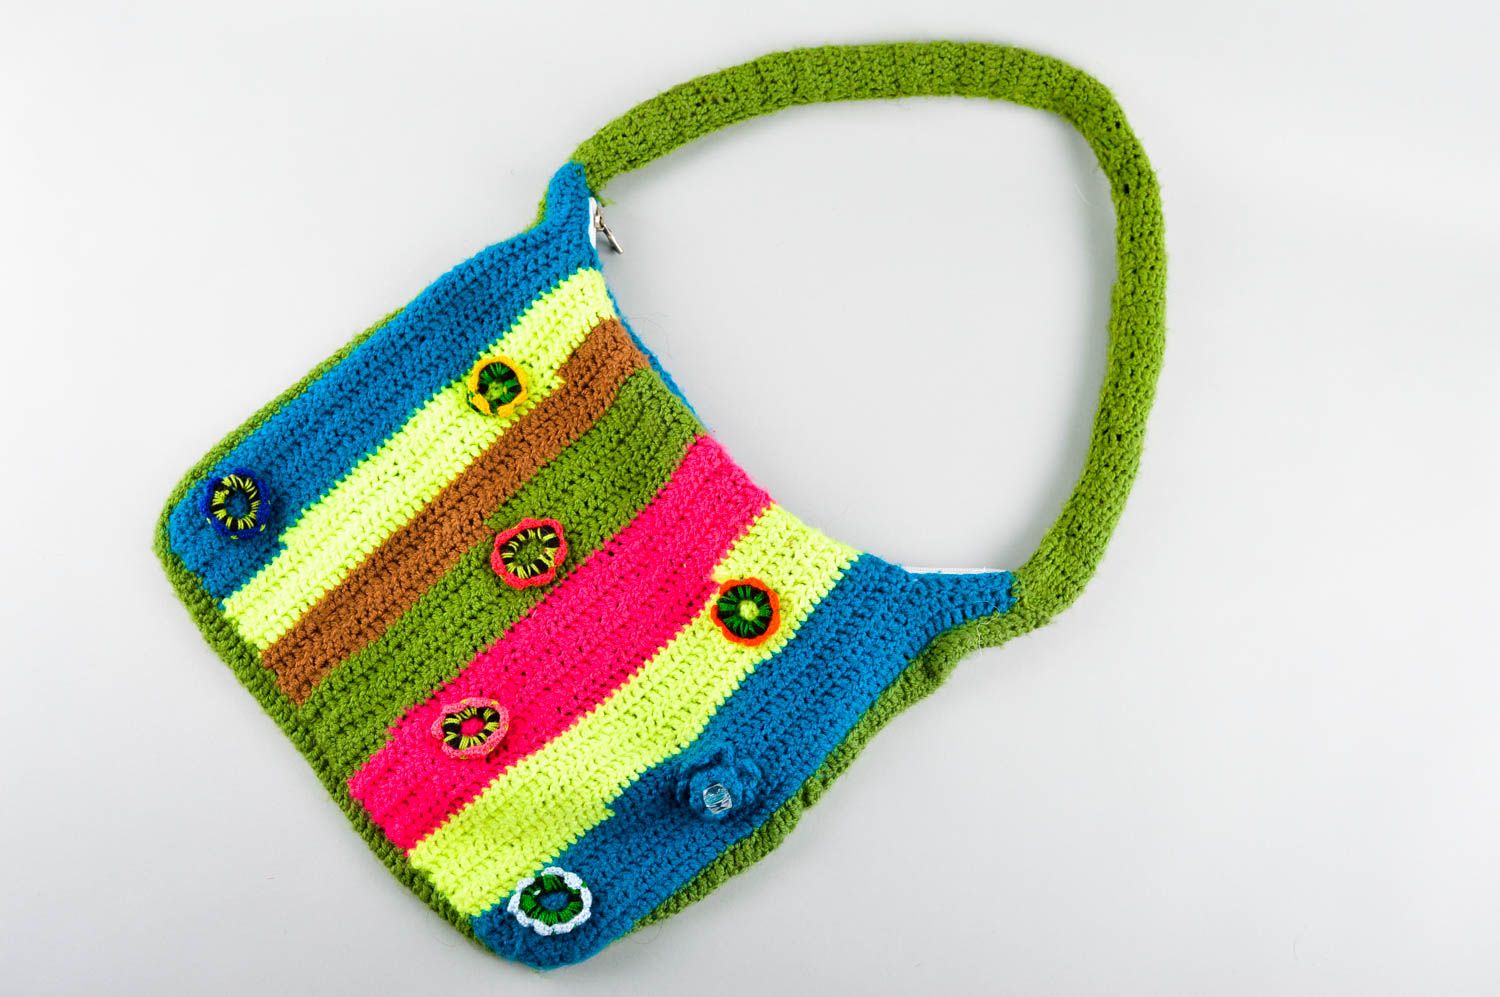 Handmade bag women handbag gift ideas designer bag for girls gift for her photo 1